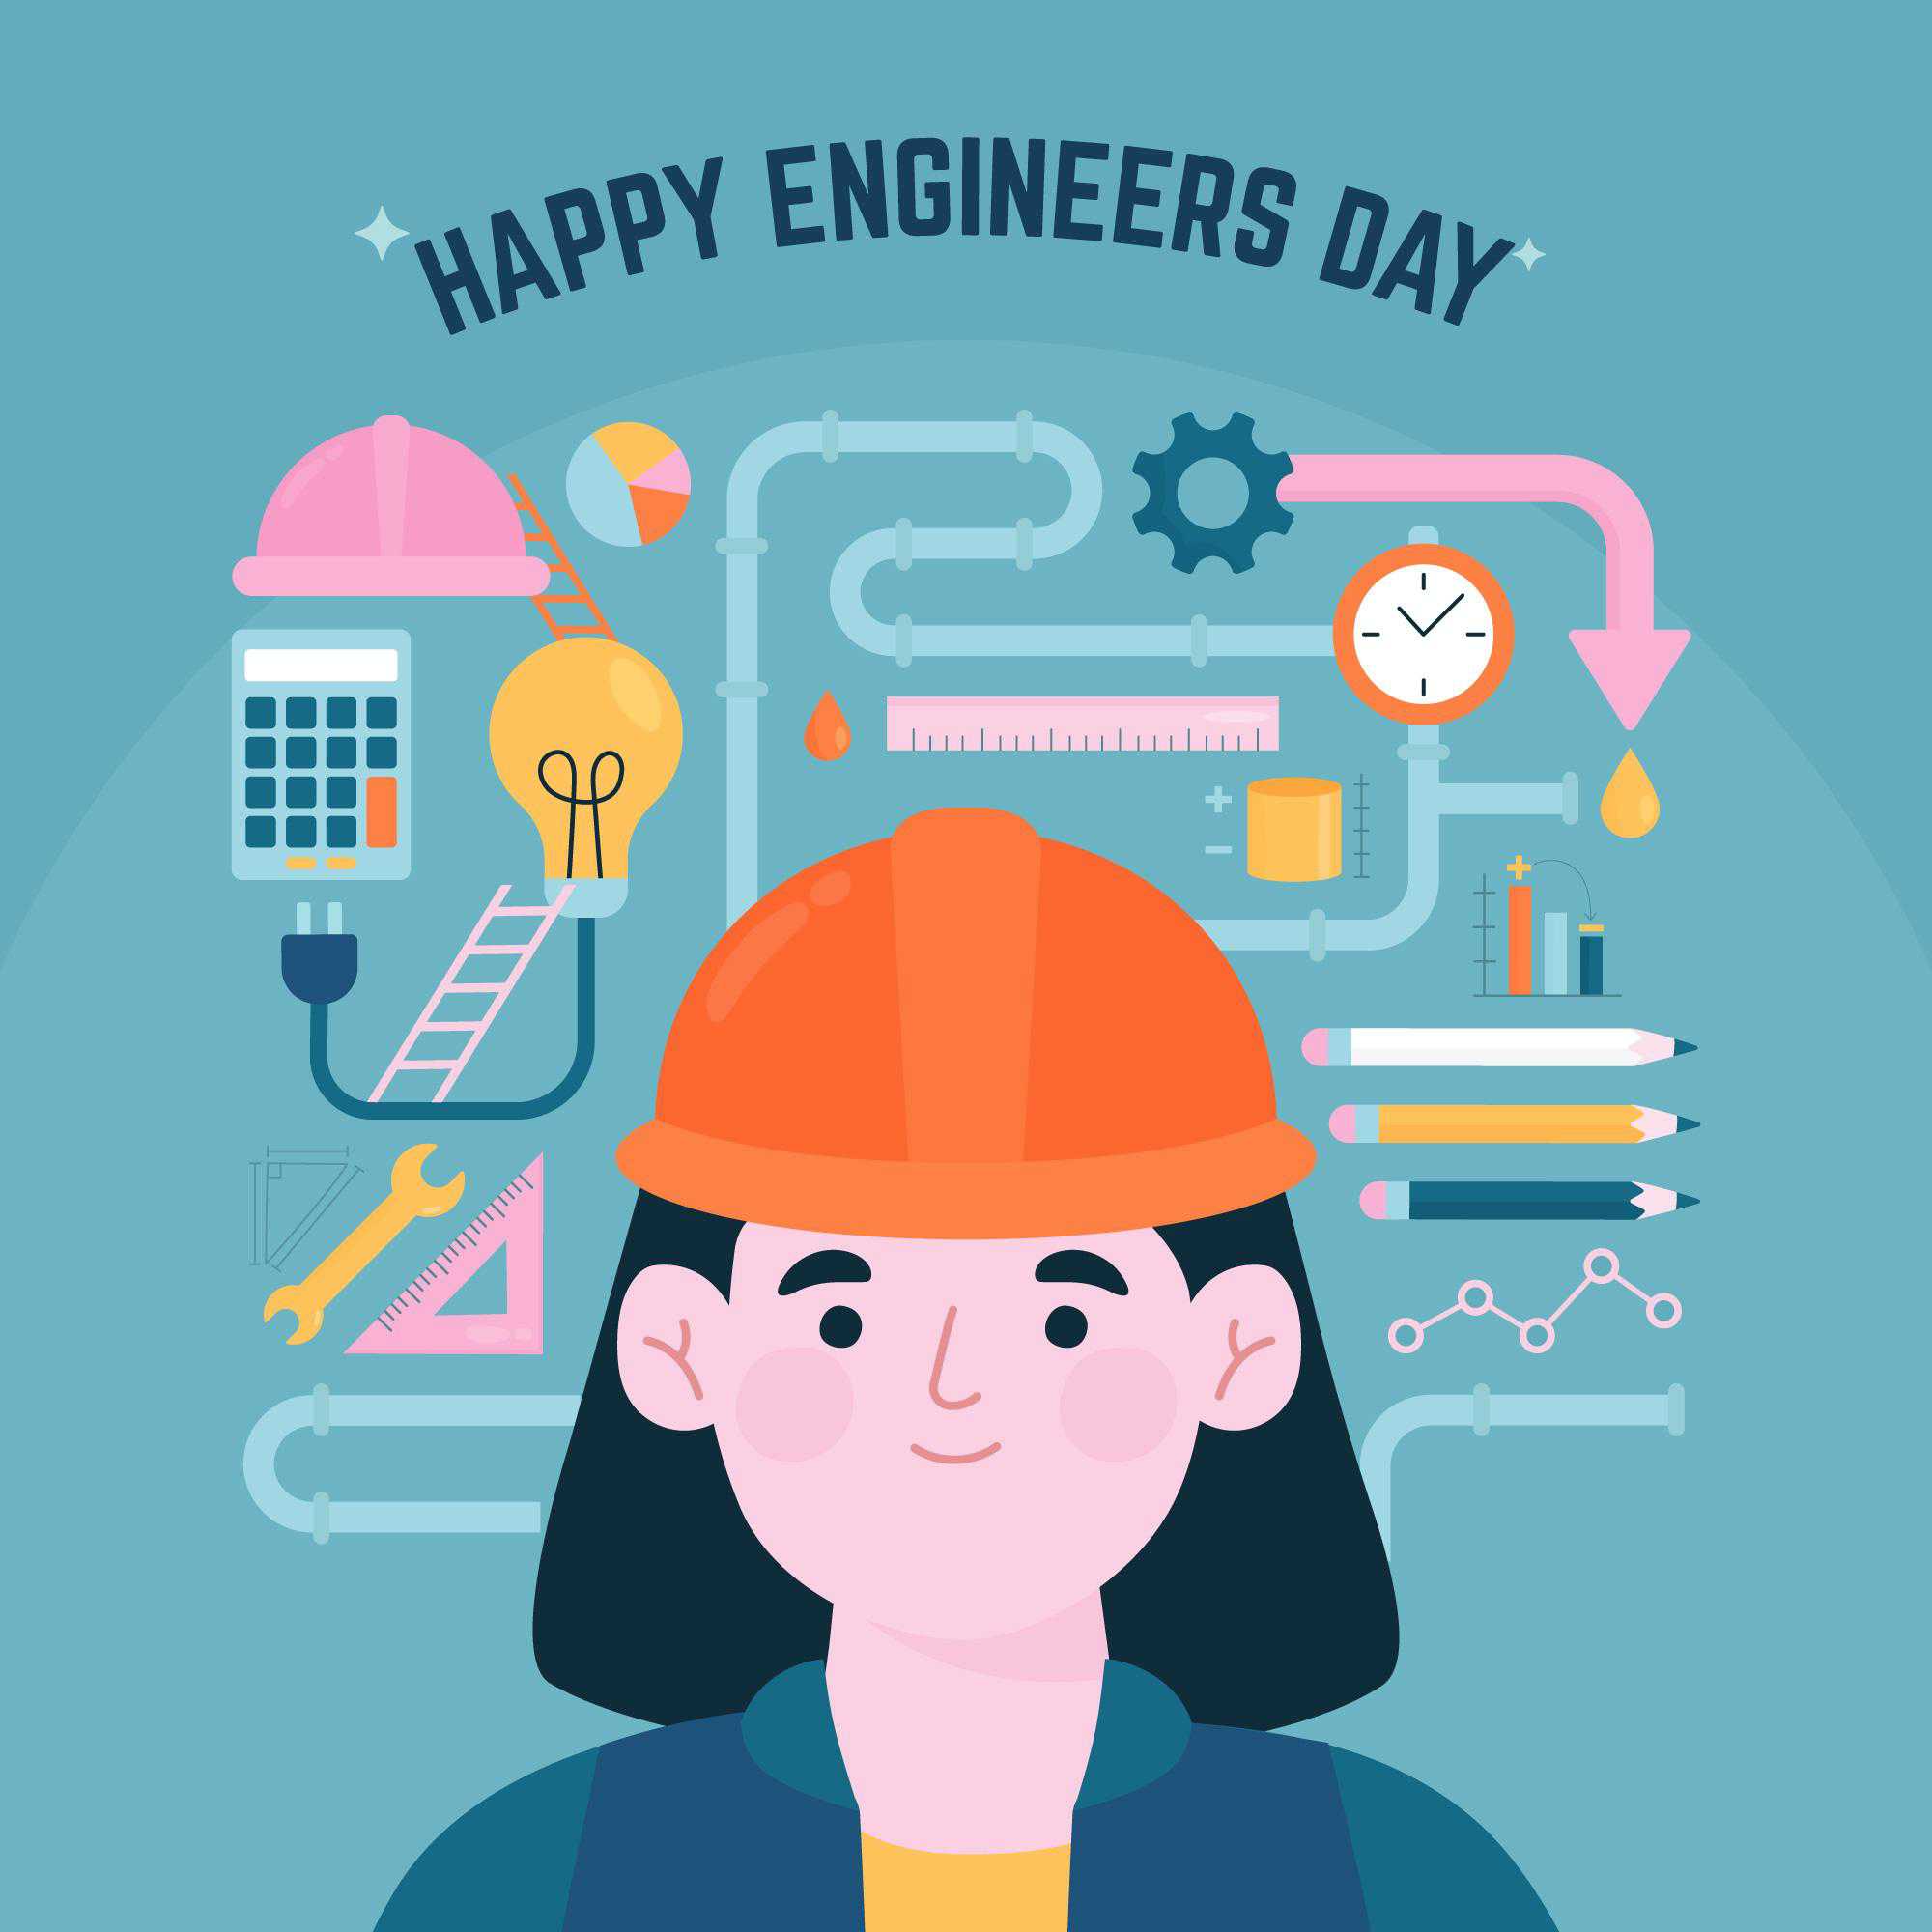 Happy Engineer's Day wallpaper download 